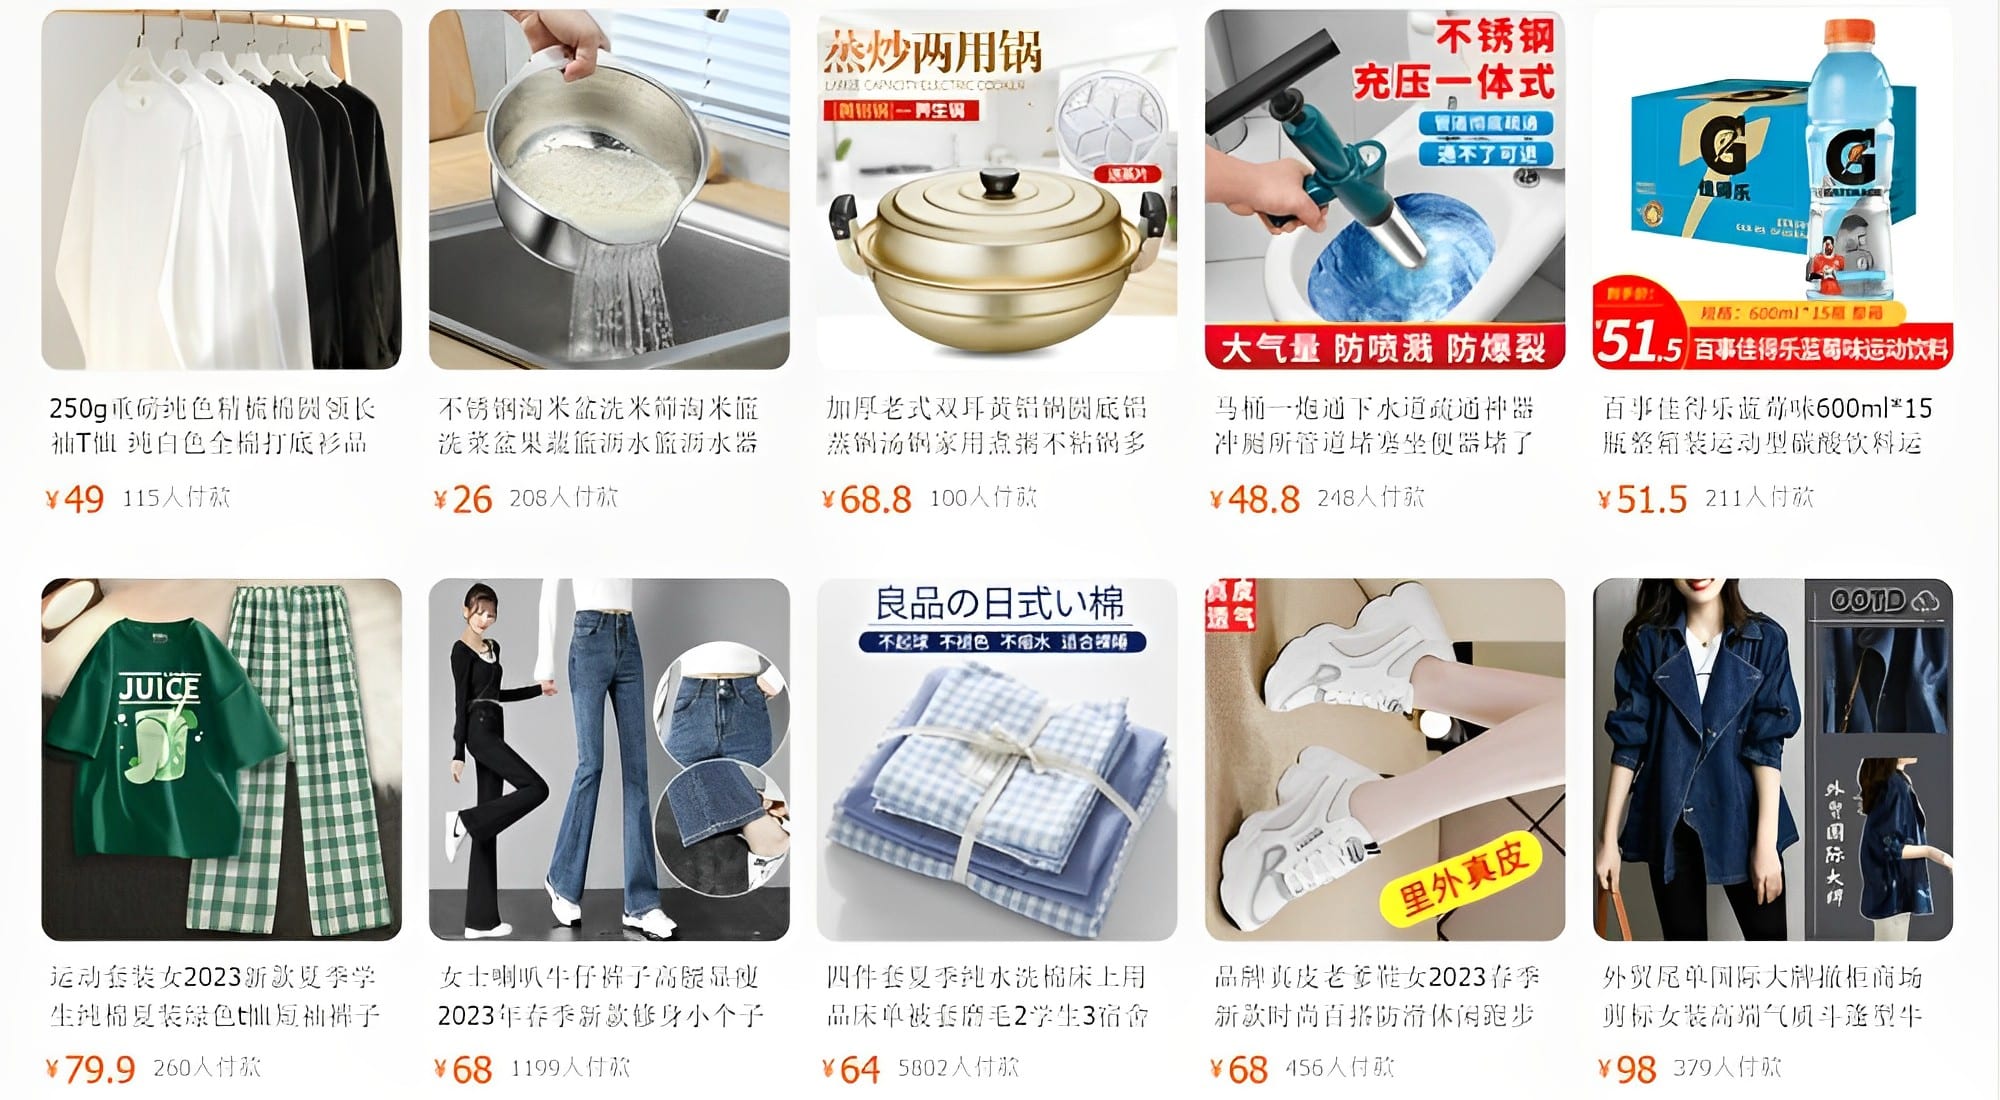 Các sản phẩm trên Taobao nhận được nhiều lượt quan tâm